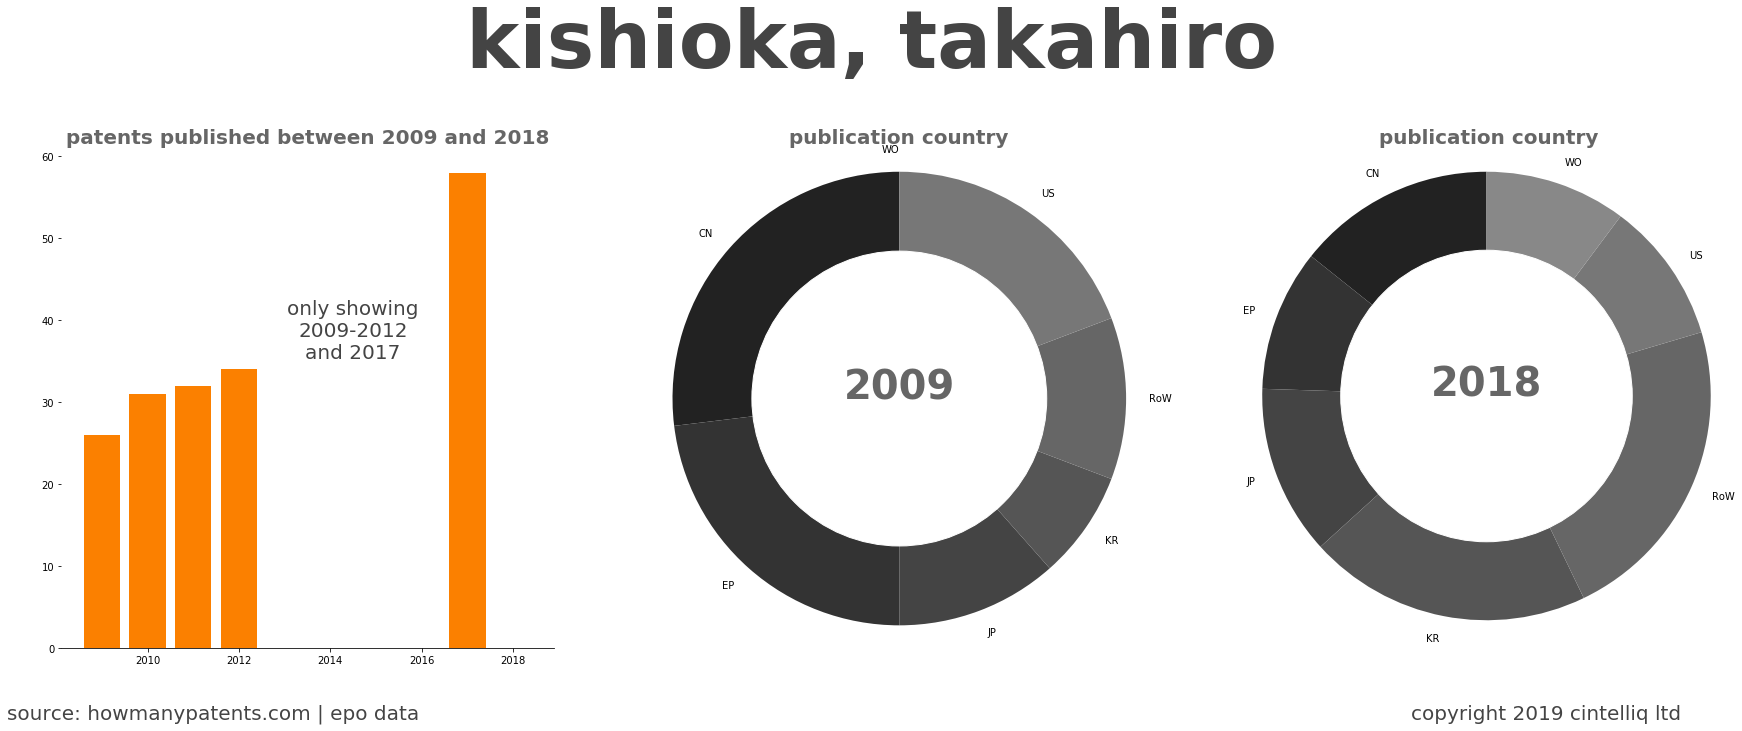 summary of patents for Kishioka, Takahiro